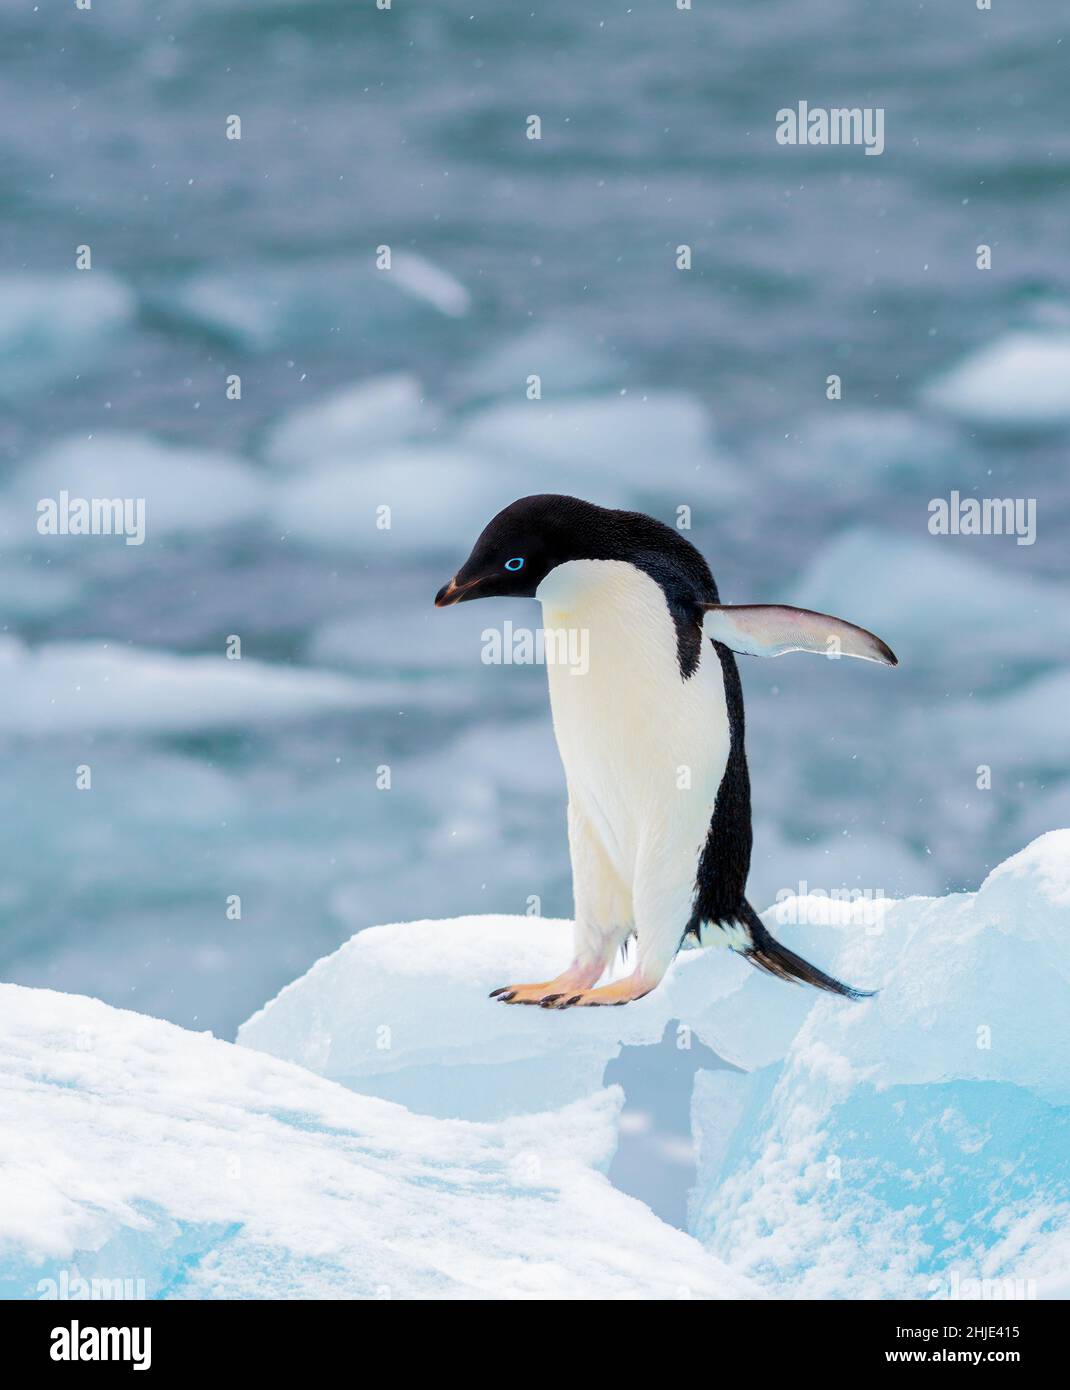 مستودع بأمانة فحم الكوك زيارة الأجداد زهر الساحل wo leben pinguine arktis  oder antarktis amazon - racheljanephotographyblog.com